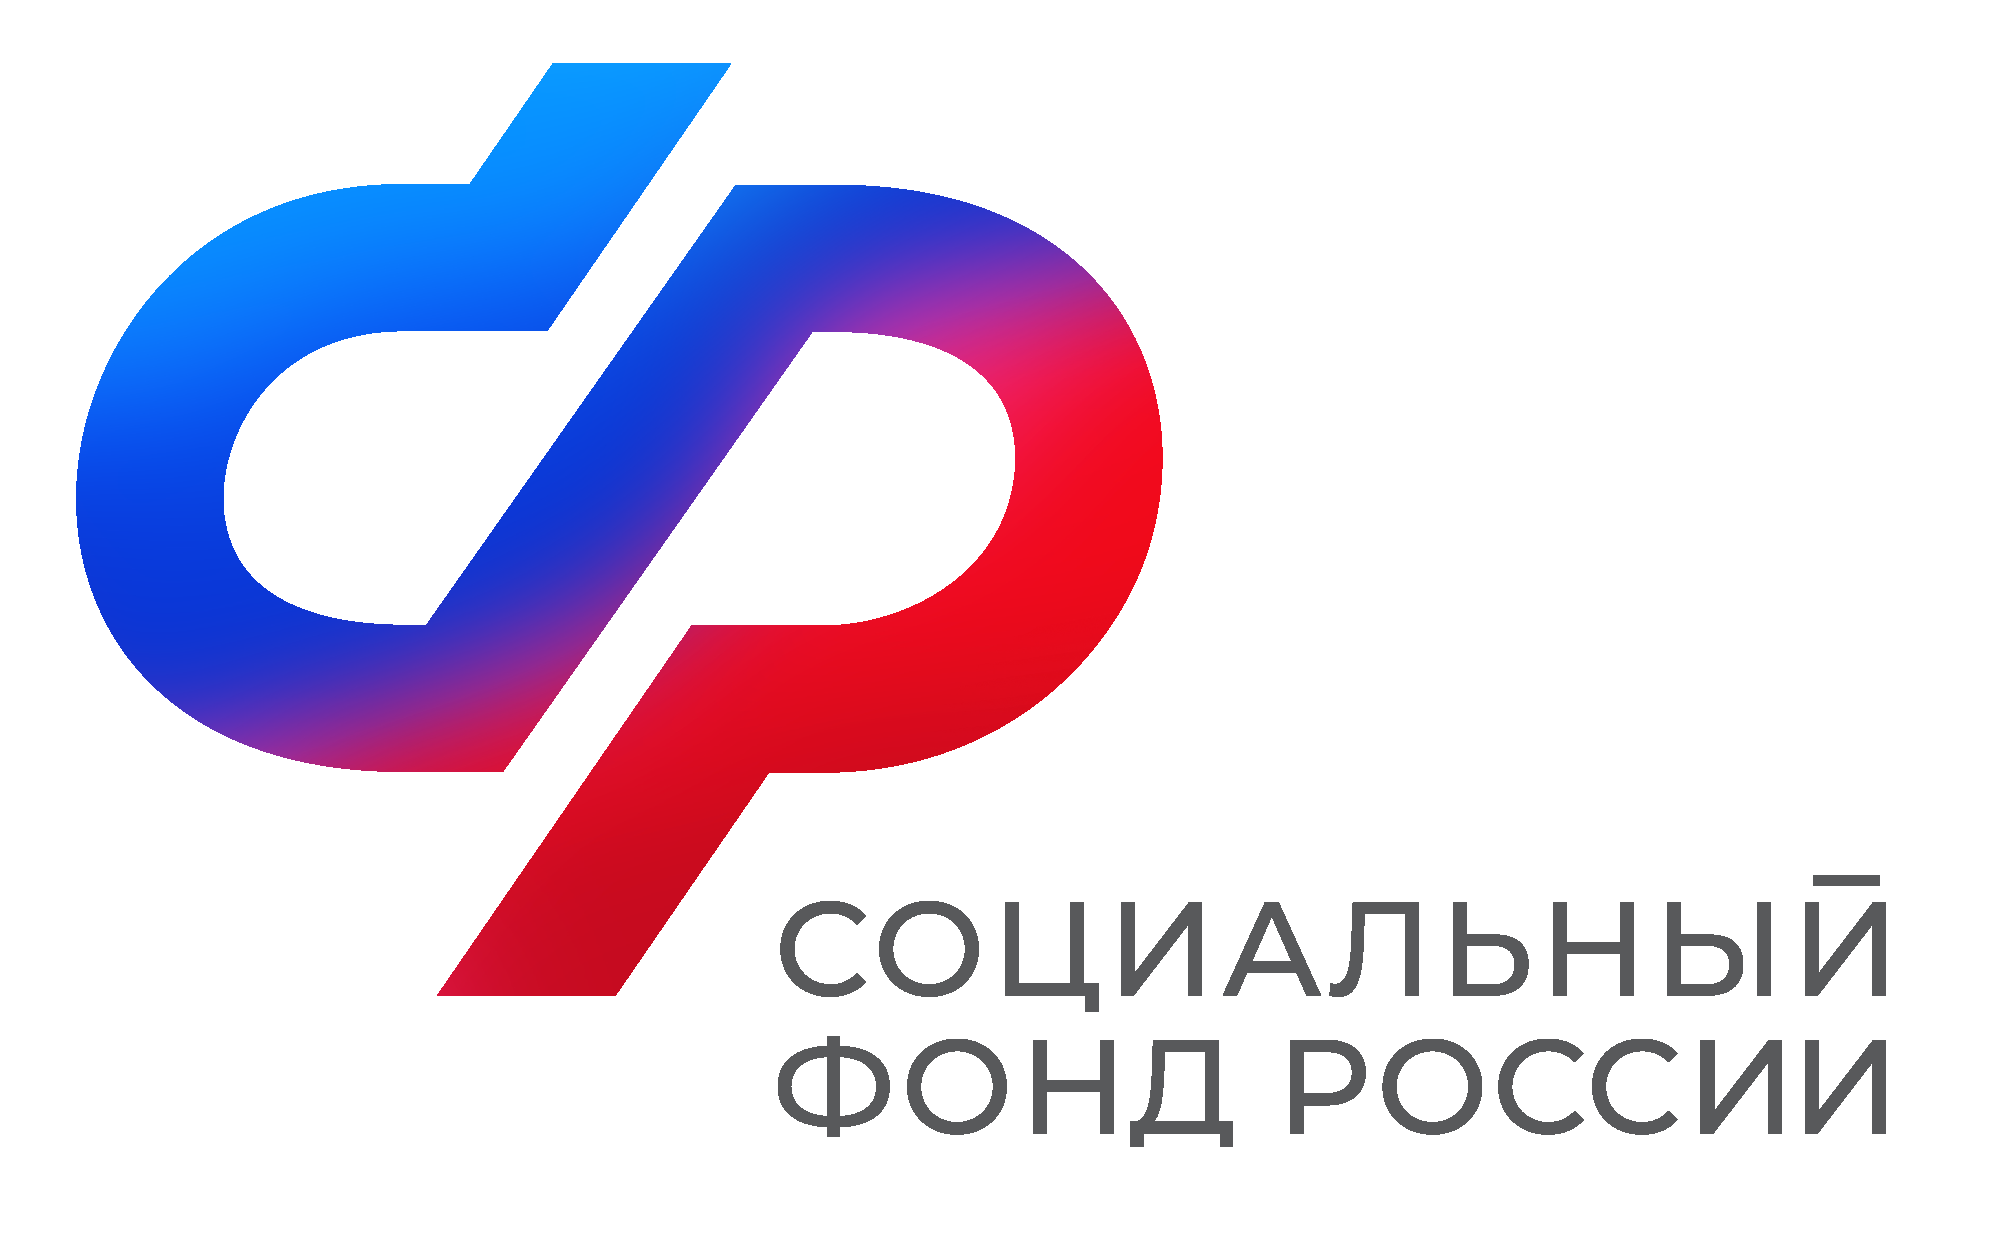 Отделение Социального фонда России по Приморскому краю принимает заявления на продление единого пособия в новом году.